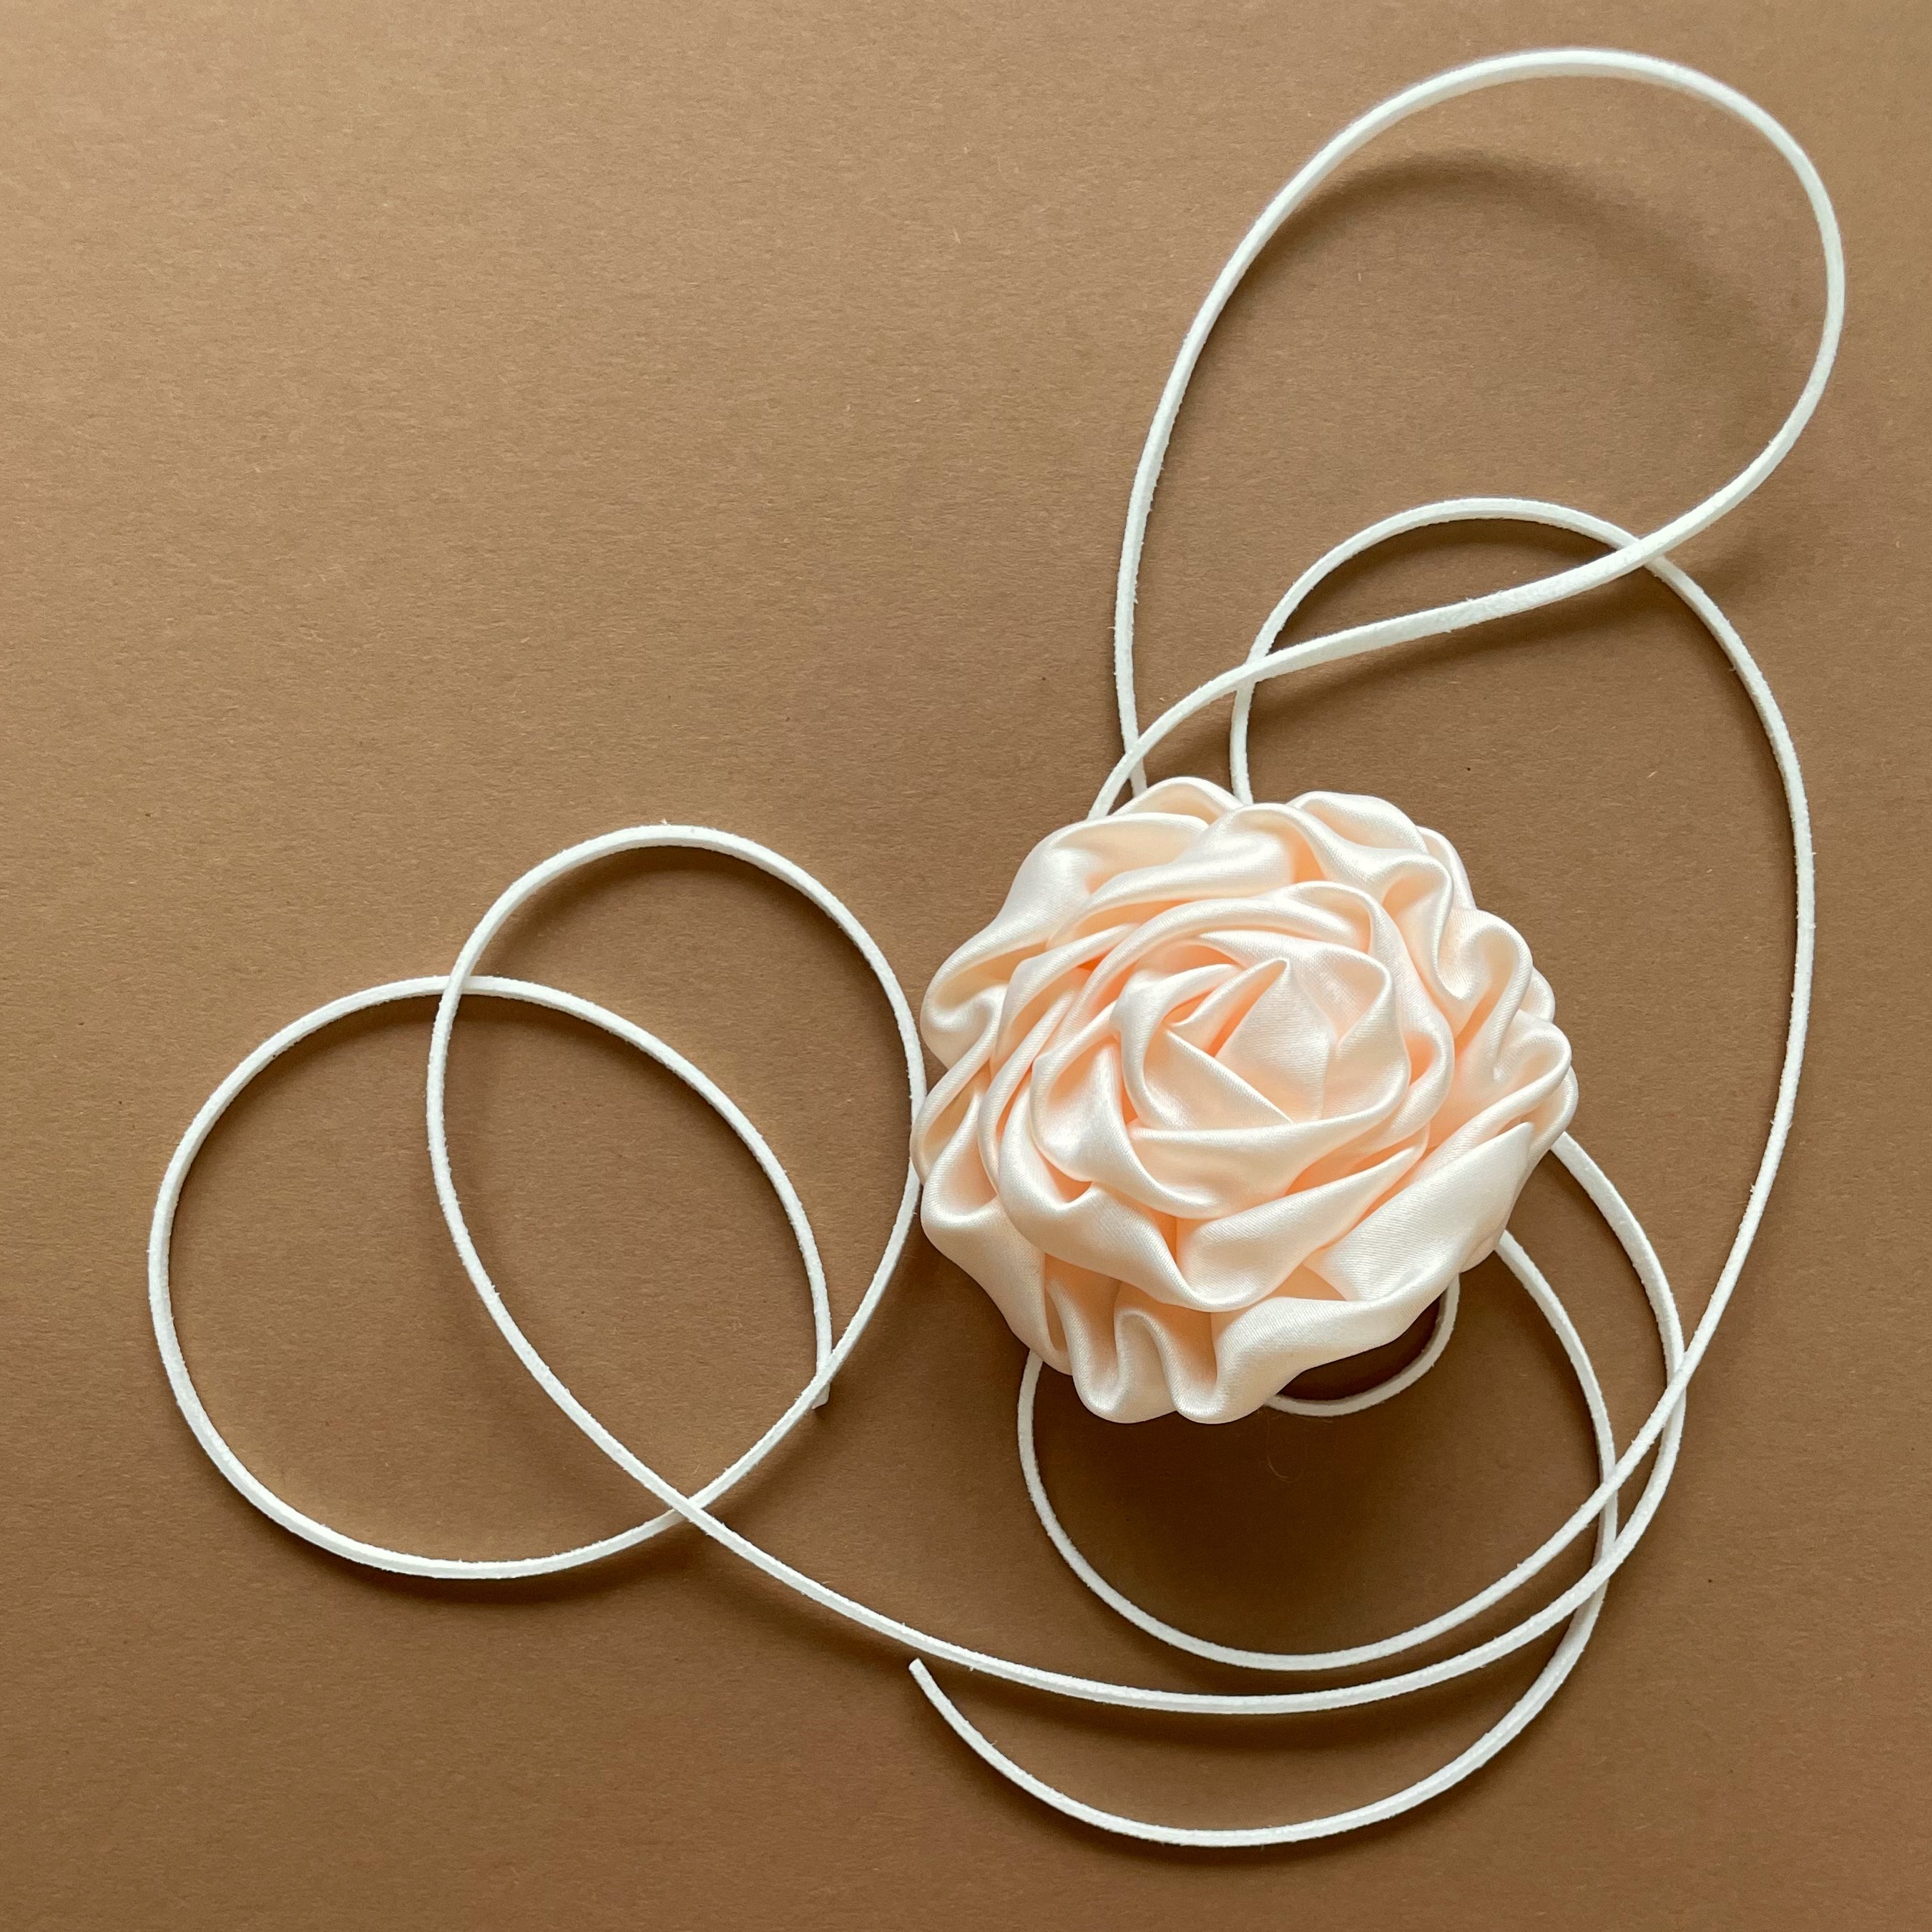 Multiflower - Satin Rosette - 8 cm - Light Peach